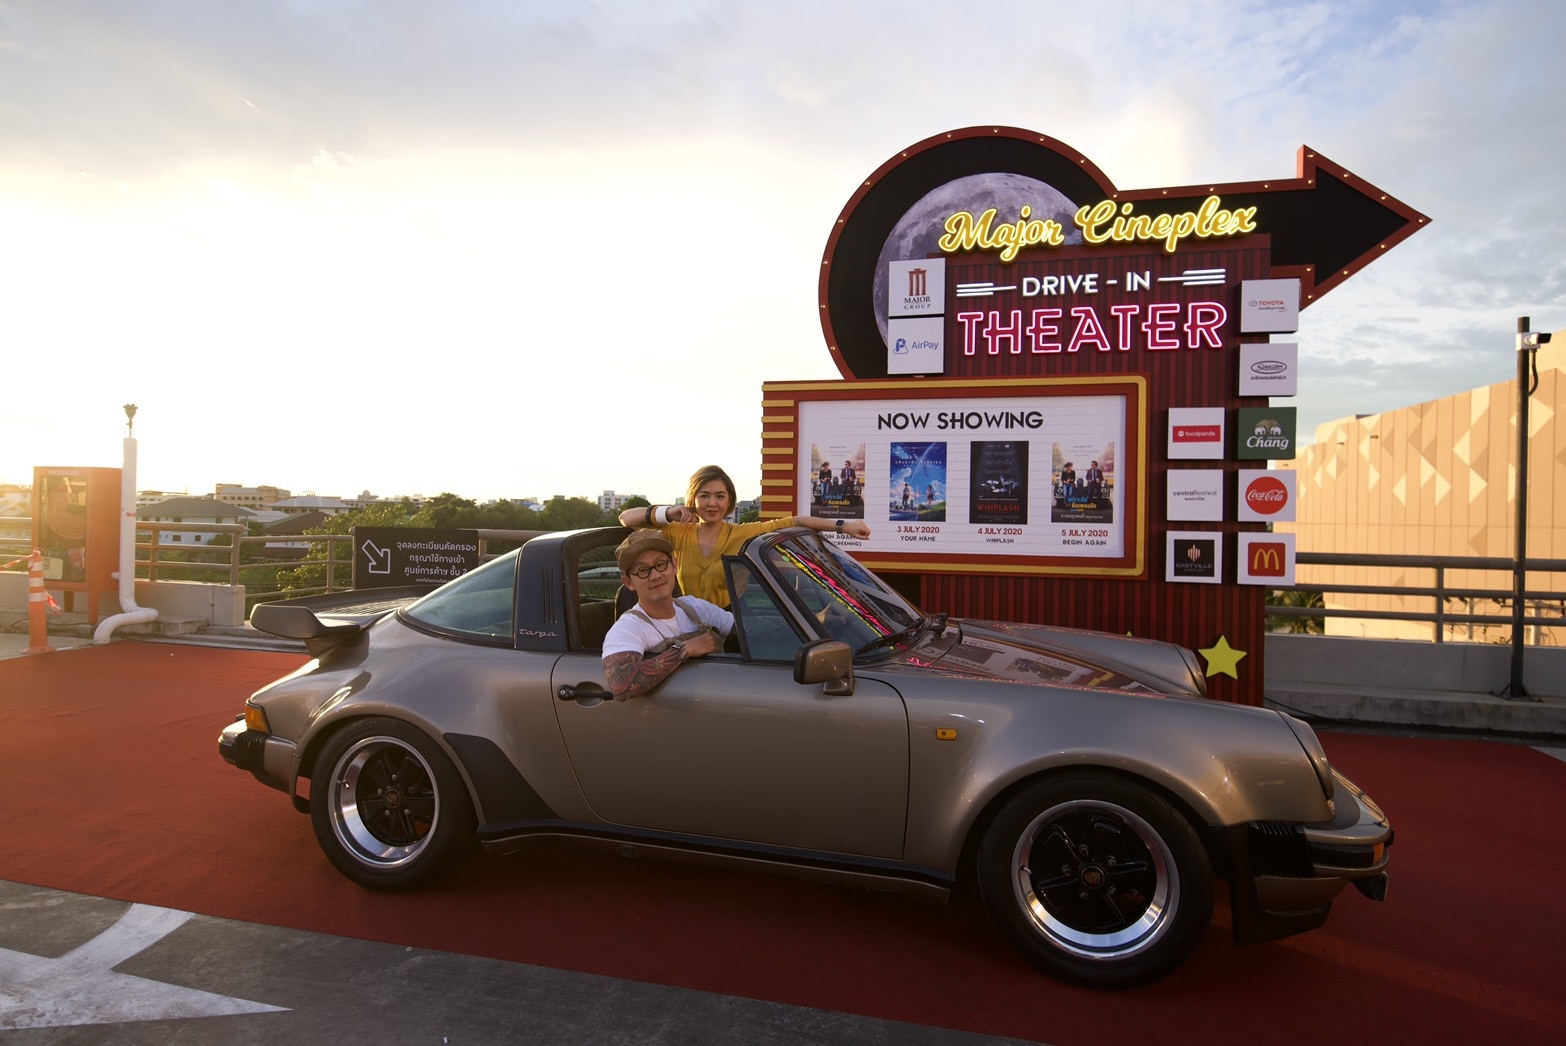 เมเจอร์ ร่วมกับ แอร์เพย์ จัดงาน Major Cineplex Drive-In Theater @CentralFestival EastVille ครั้งแรกในประเทศไทย! กับงาน Drive-In Theater ลอยฟ้าสุดคูล!